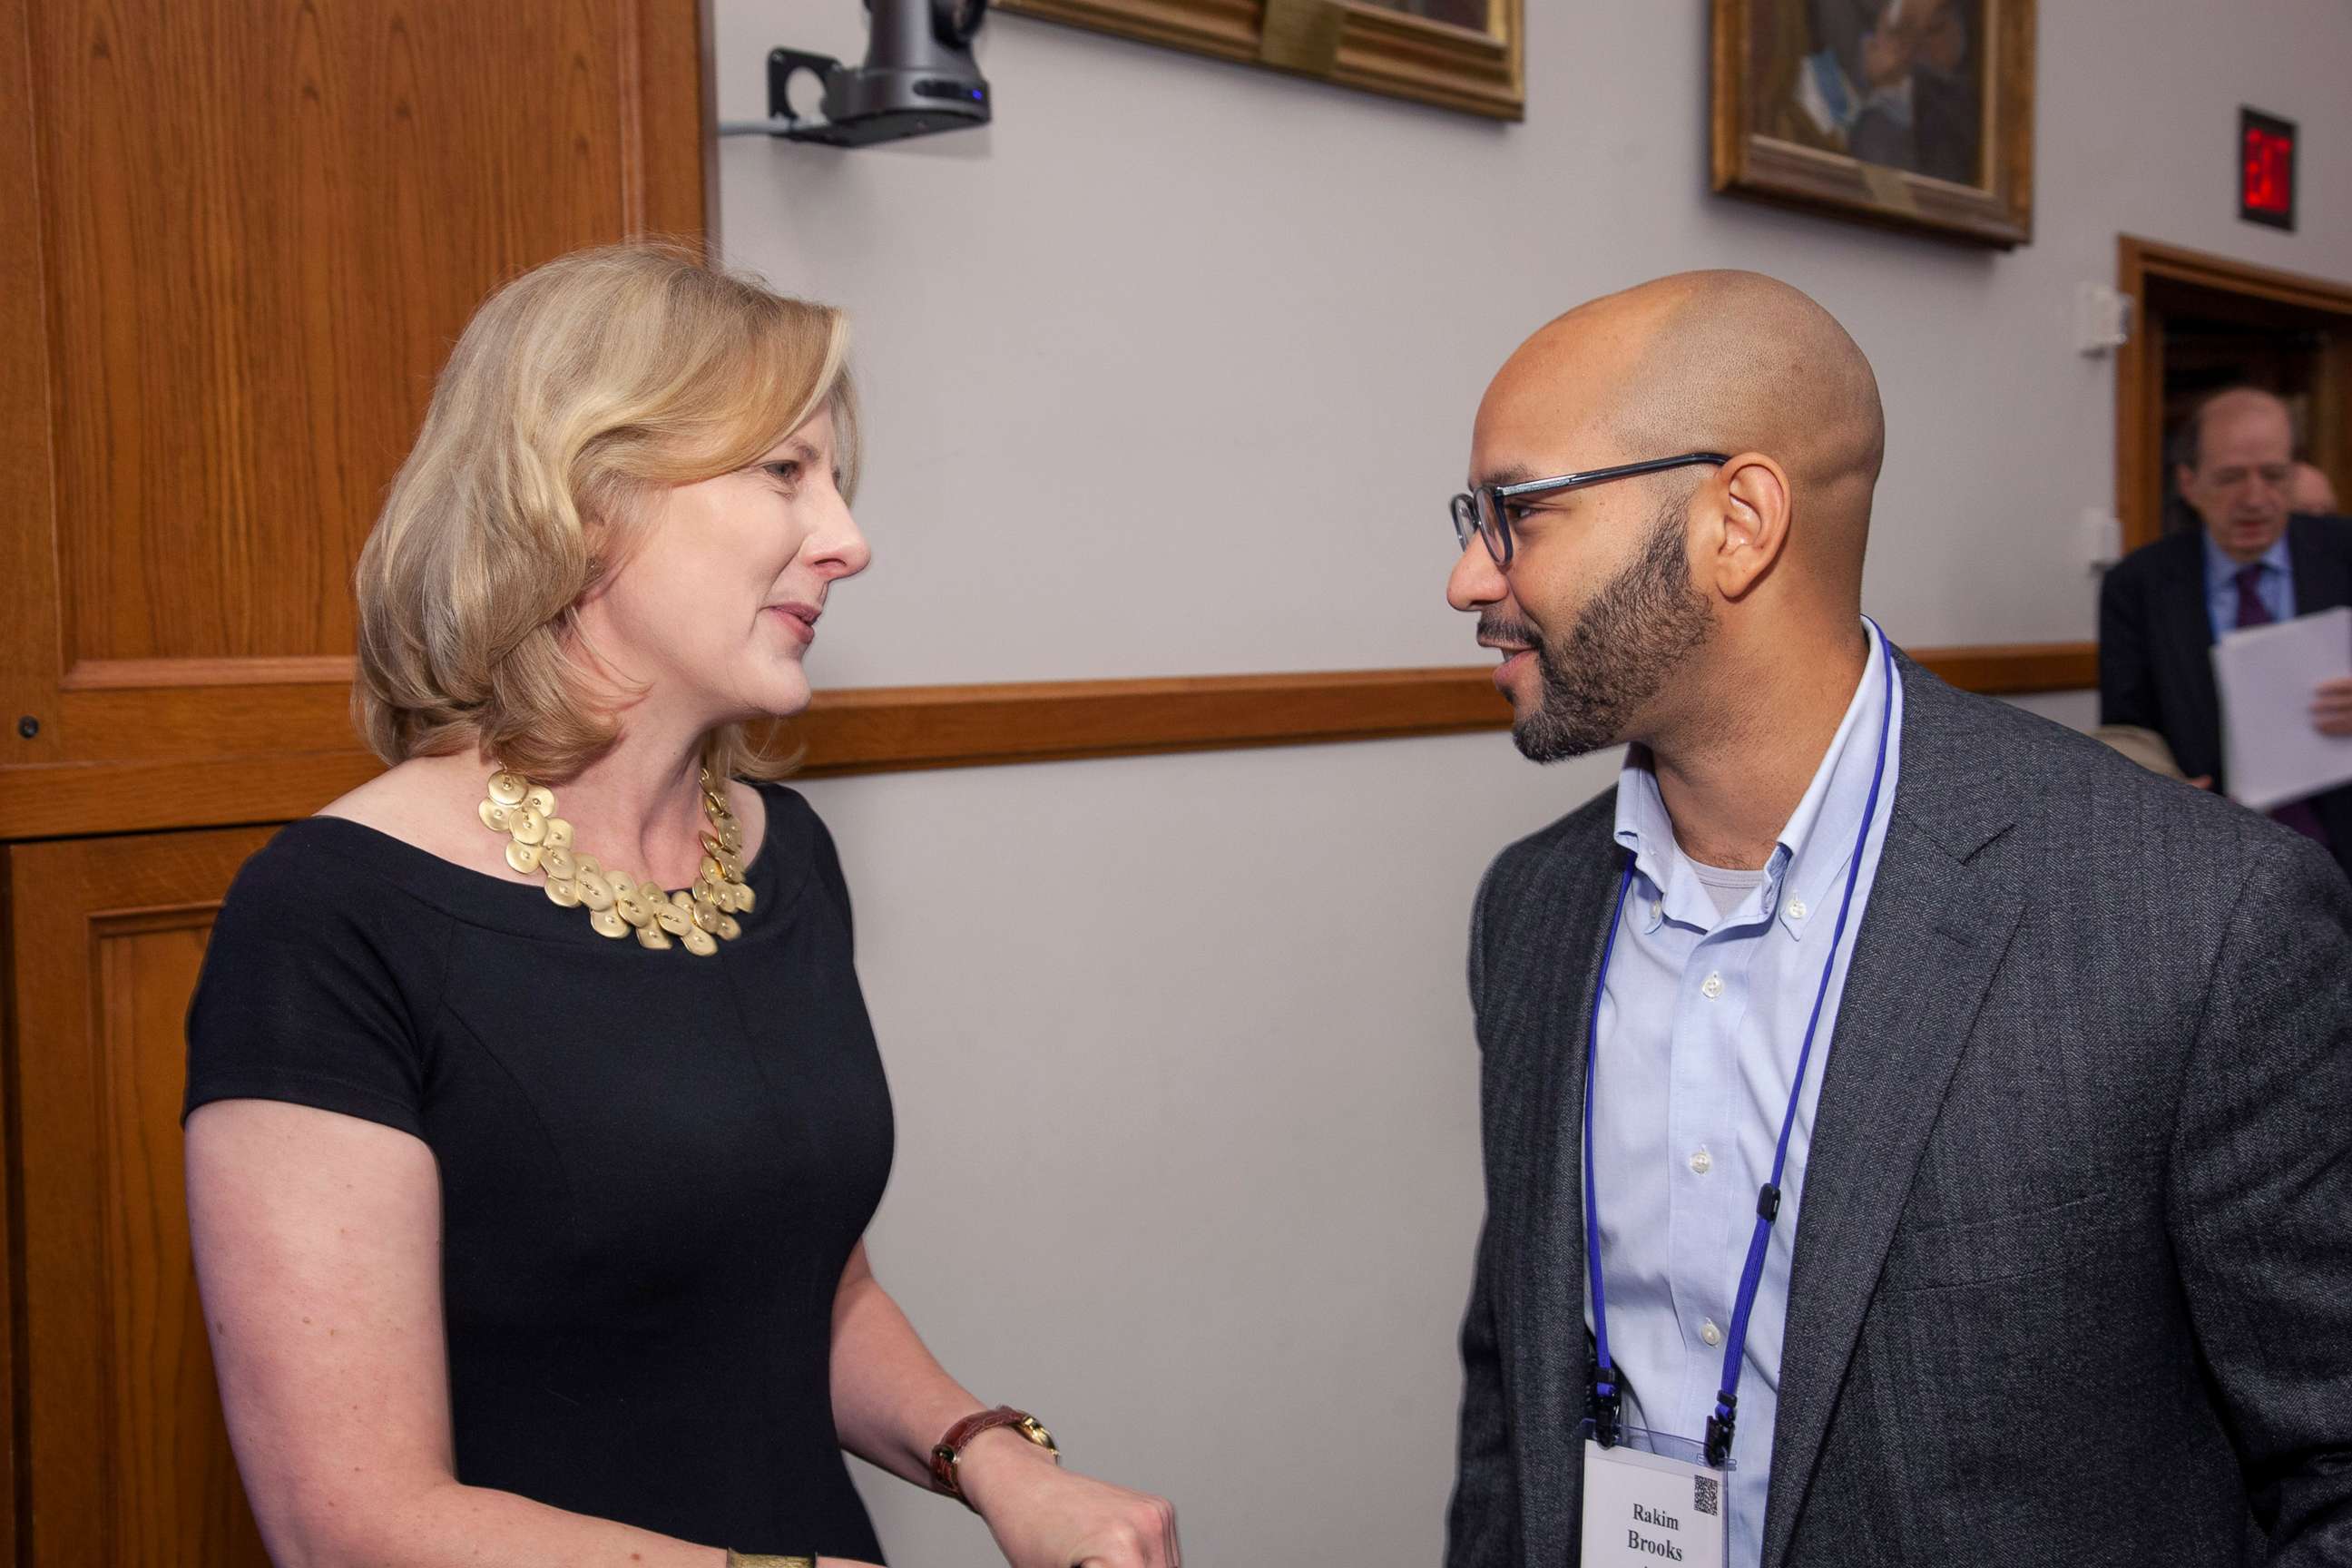 PHOTO: Yale Law Dean Heather Gerken talks with Rakim H. D. Brooks in 2019 at Yale's Alumni weekend.